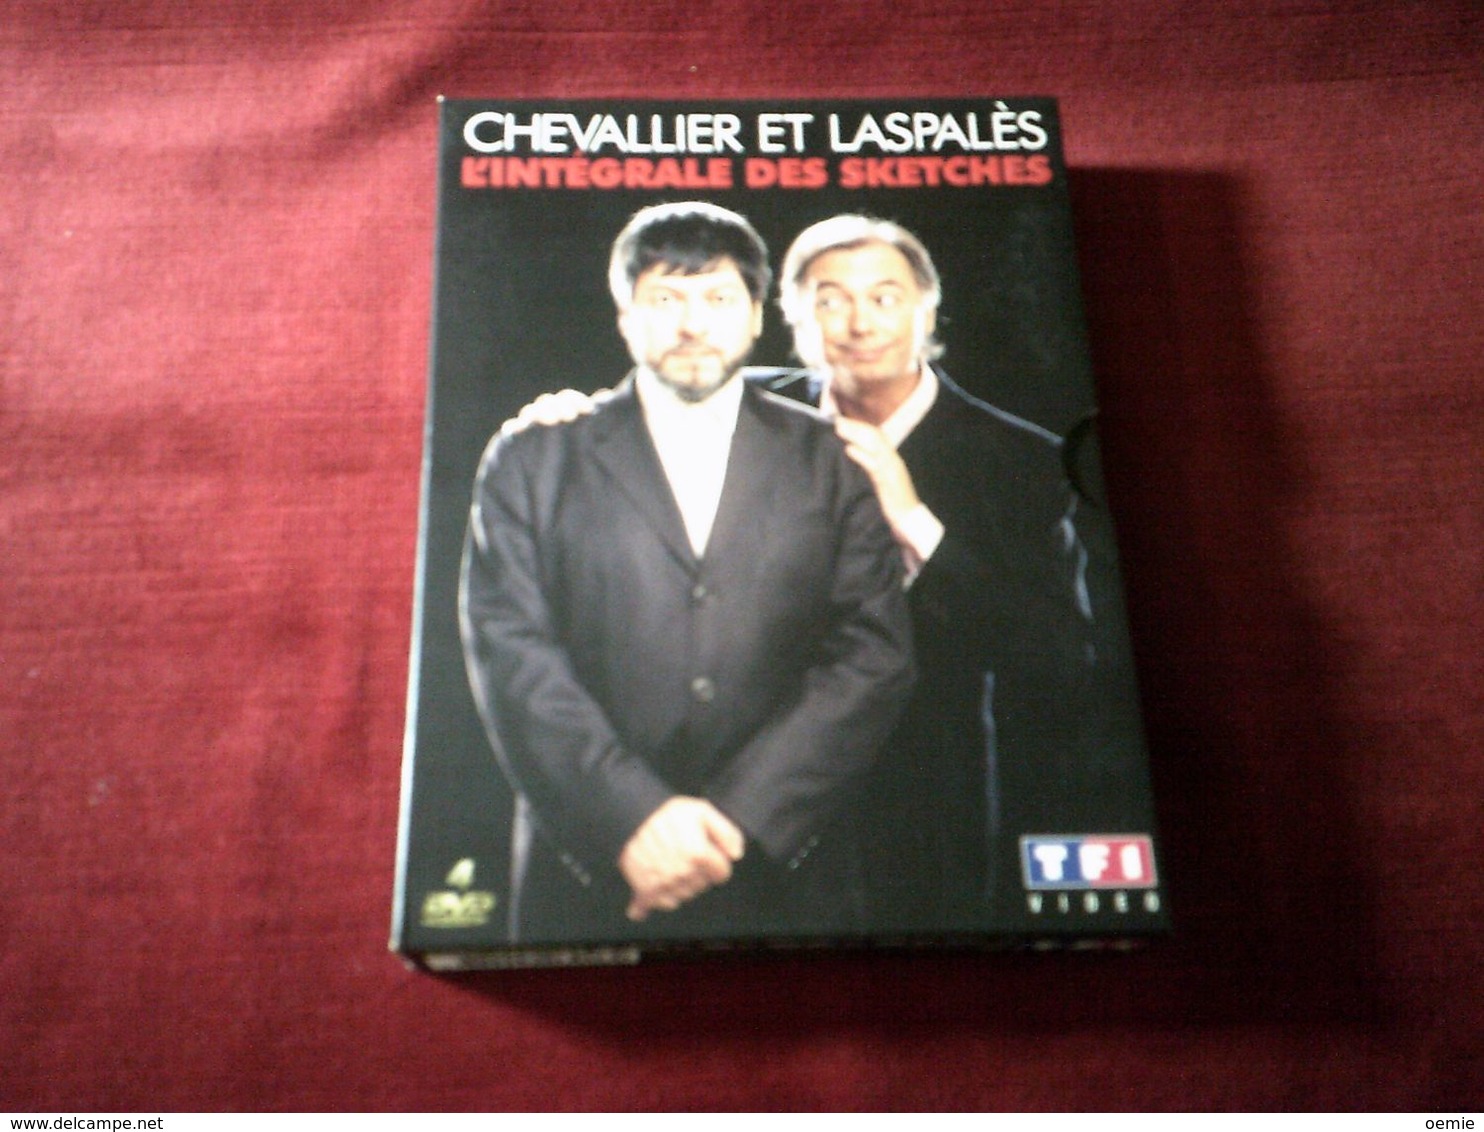 Chevalier Et Laspales  4  DVD  L'INTEGRALE DES SKETCHES - Concert & Music